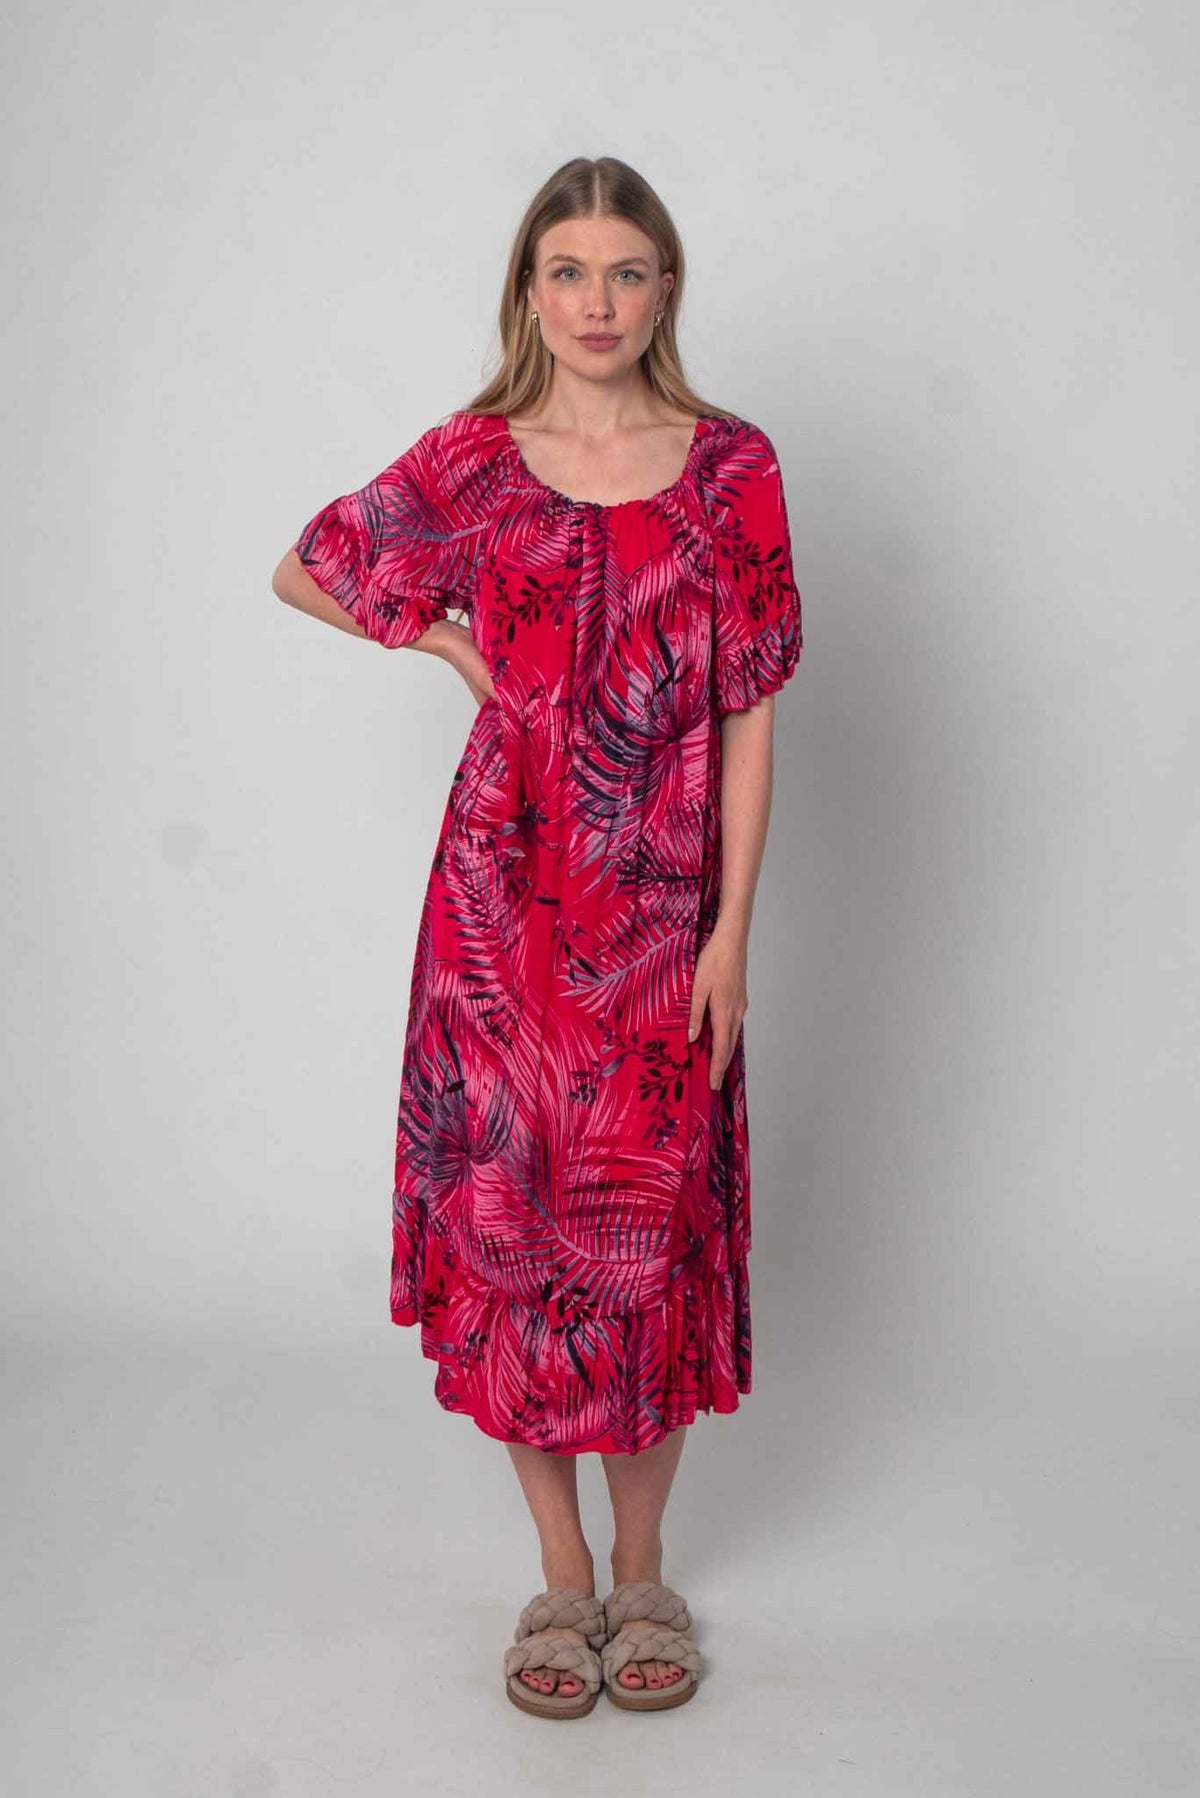 Lockeres Baumwolle Kleid mit Design - Rot